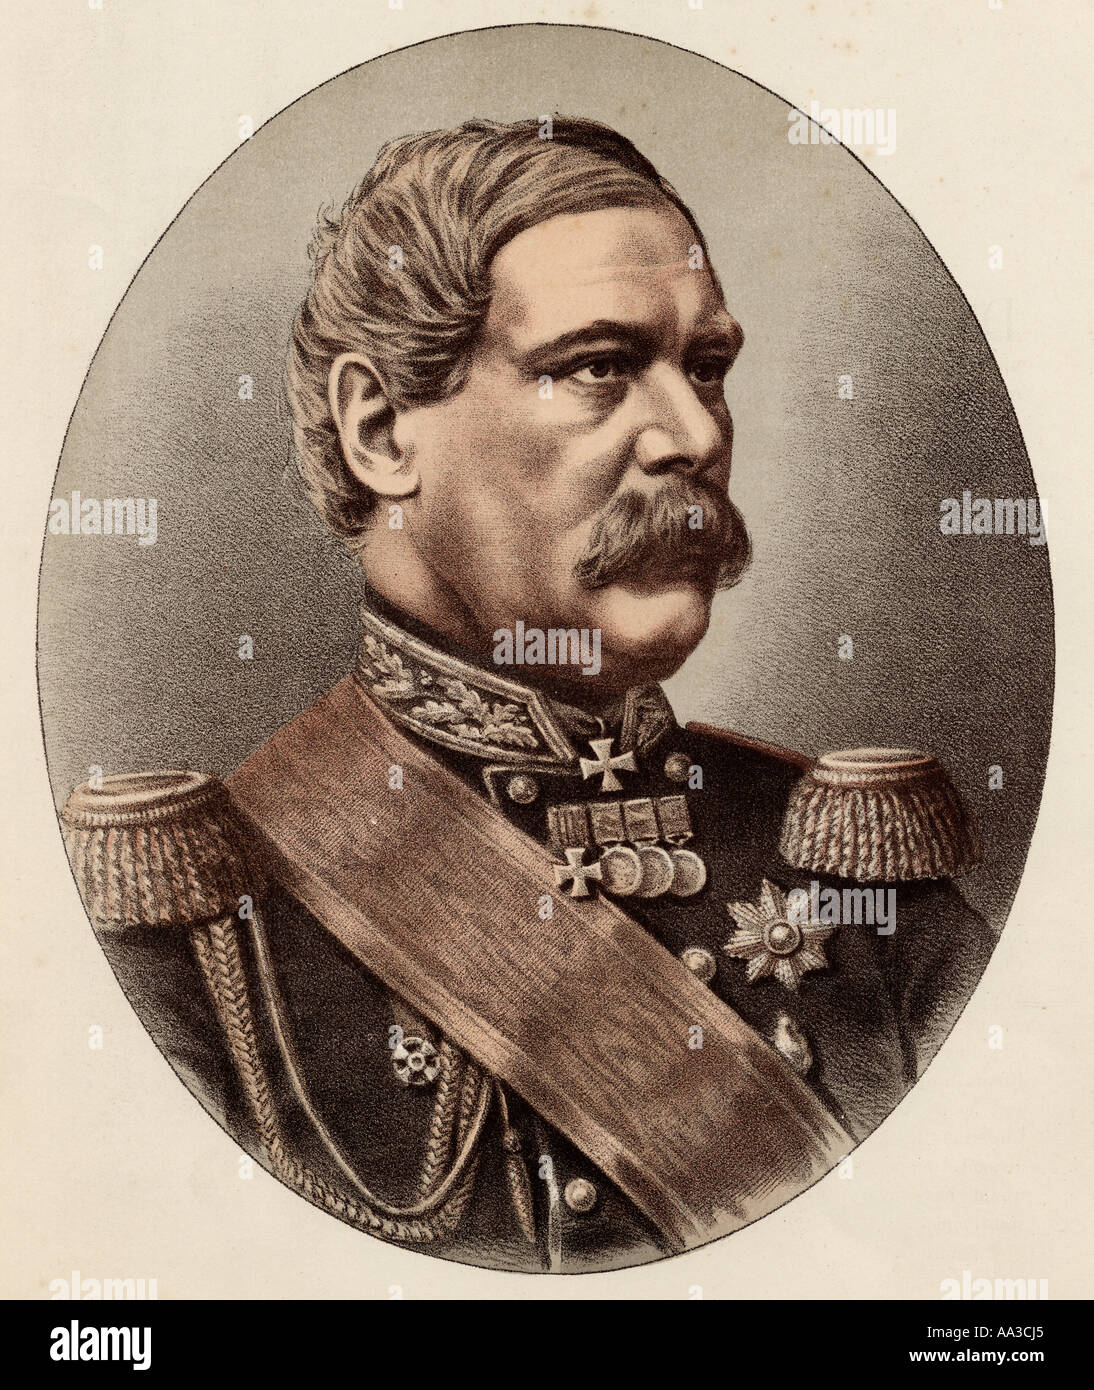 Franz Eduard Graff von Tottleben, alias General Francis Edward Todleben, 1818-1884er. Baltischer deutscher Militäringenieur und Kaiserlich russischer Armeegeneral Stockfoto